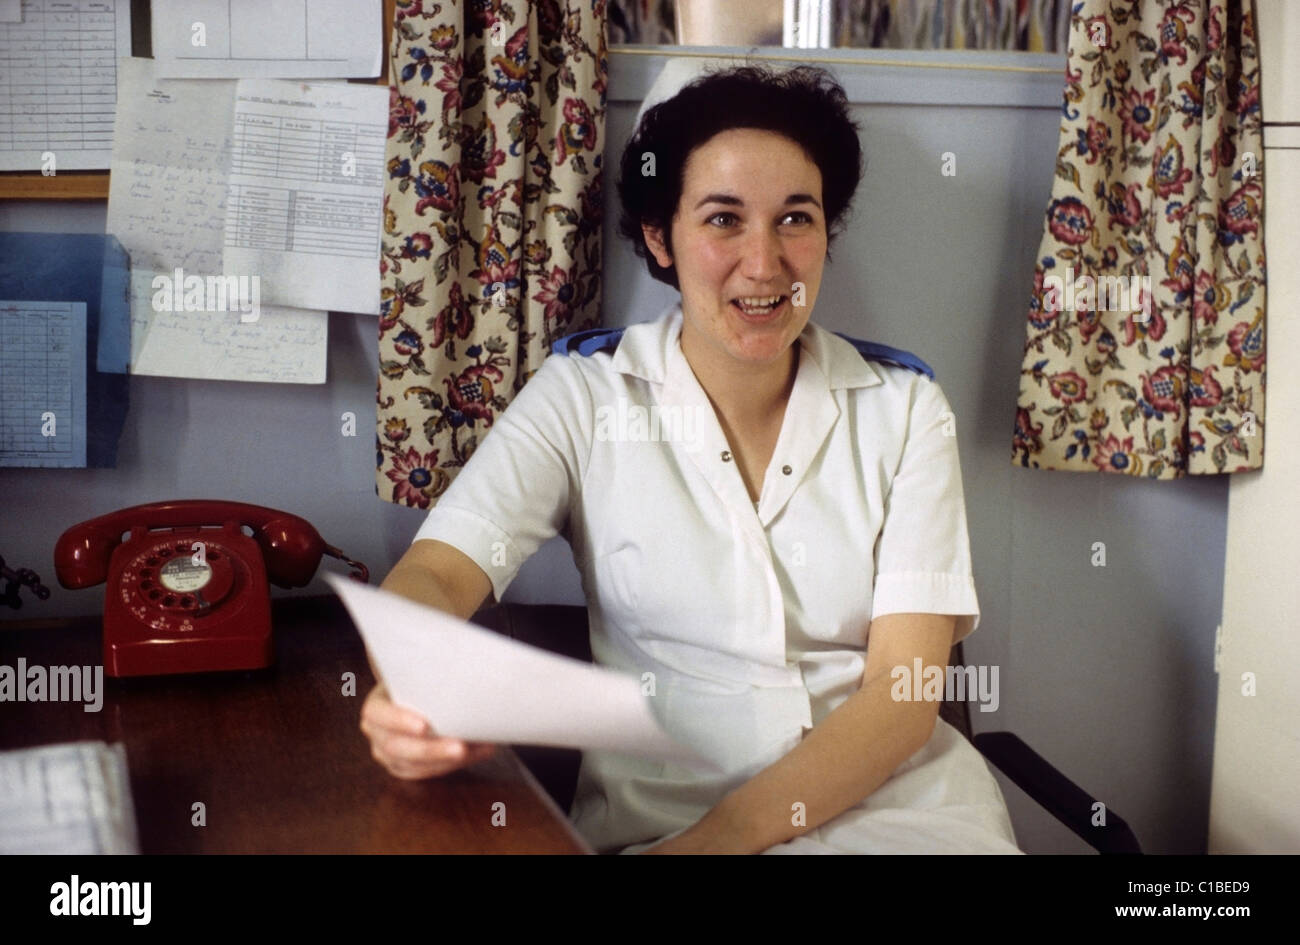 Eine junge NHS Krankenschwester lächelnd in eine weiße Uniform sitzen an einem Schreibtisch neben einer roten Telefon halten Sie einen Buchstaben in ein Krankenhaus Administration Office in den 1970er Jahren 1980 Bronglais Krankenhaus Aberystwyth Wales UK KATHY DEWITT Stockfoto